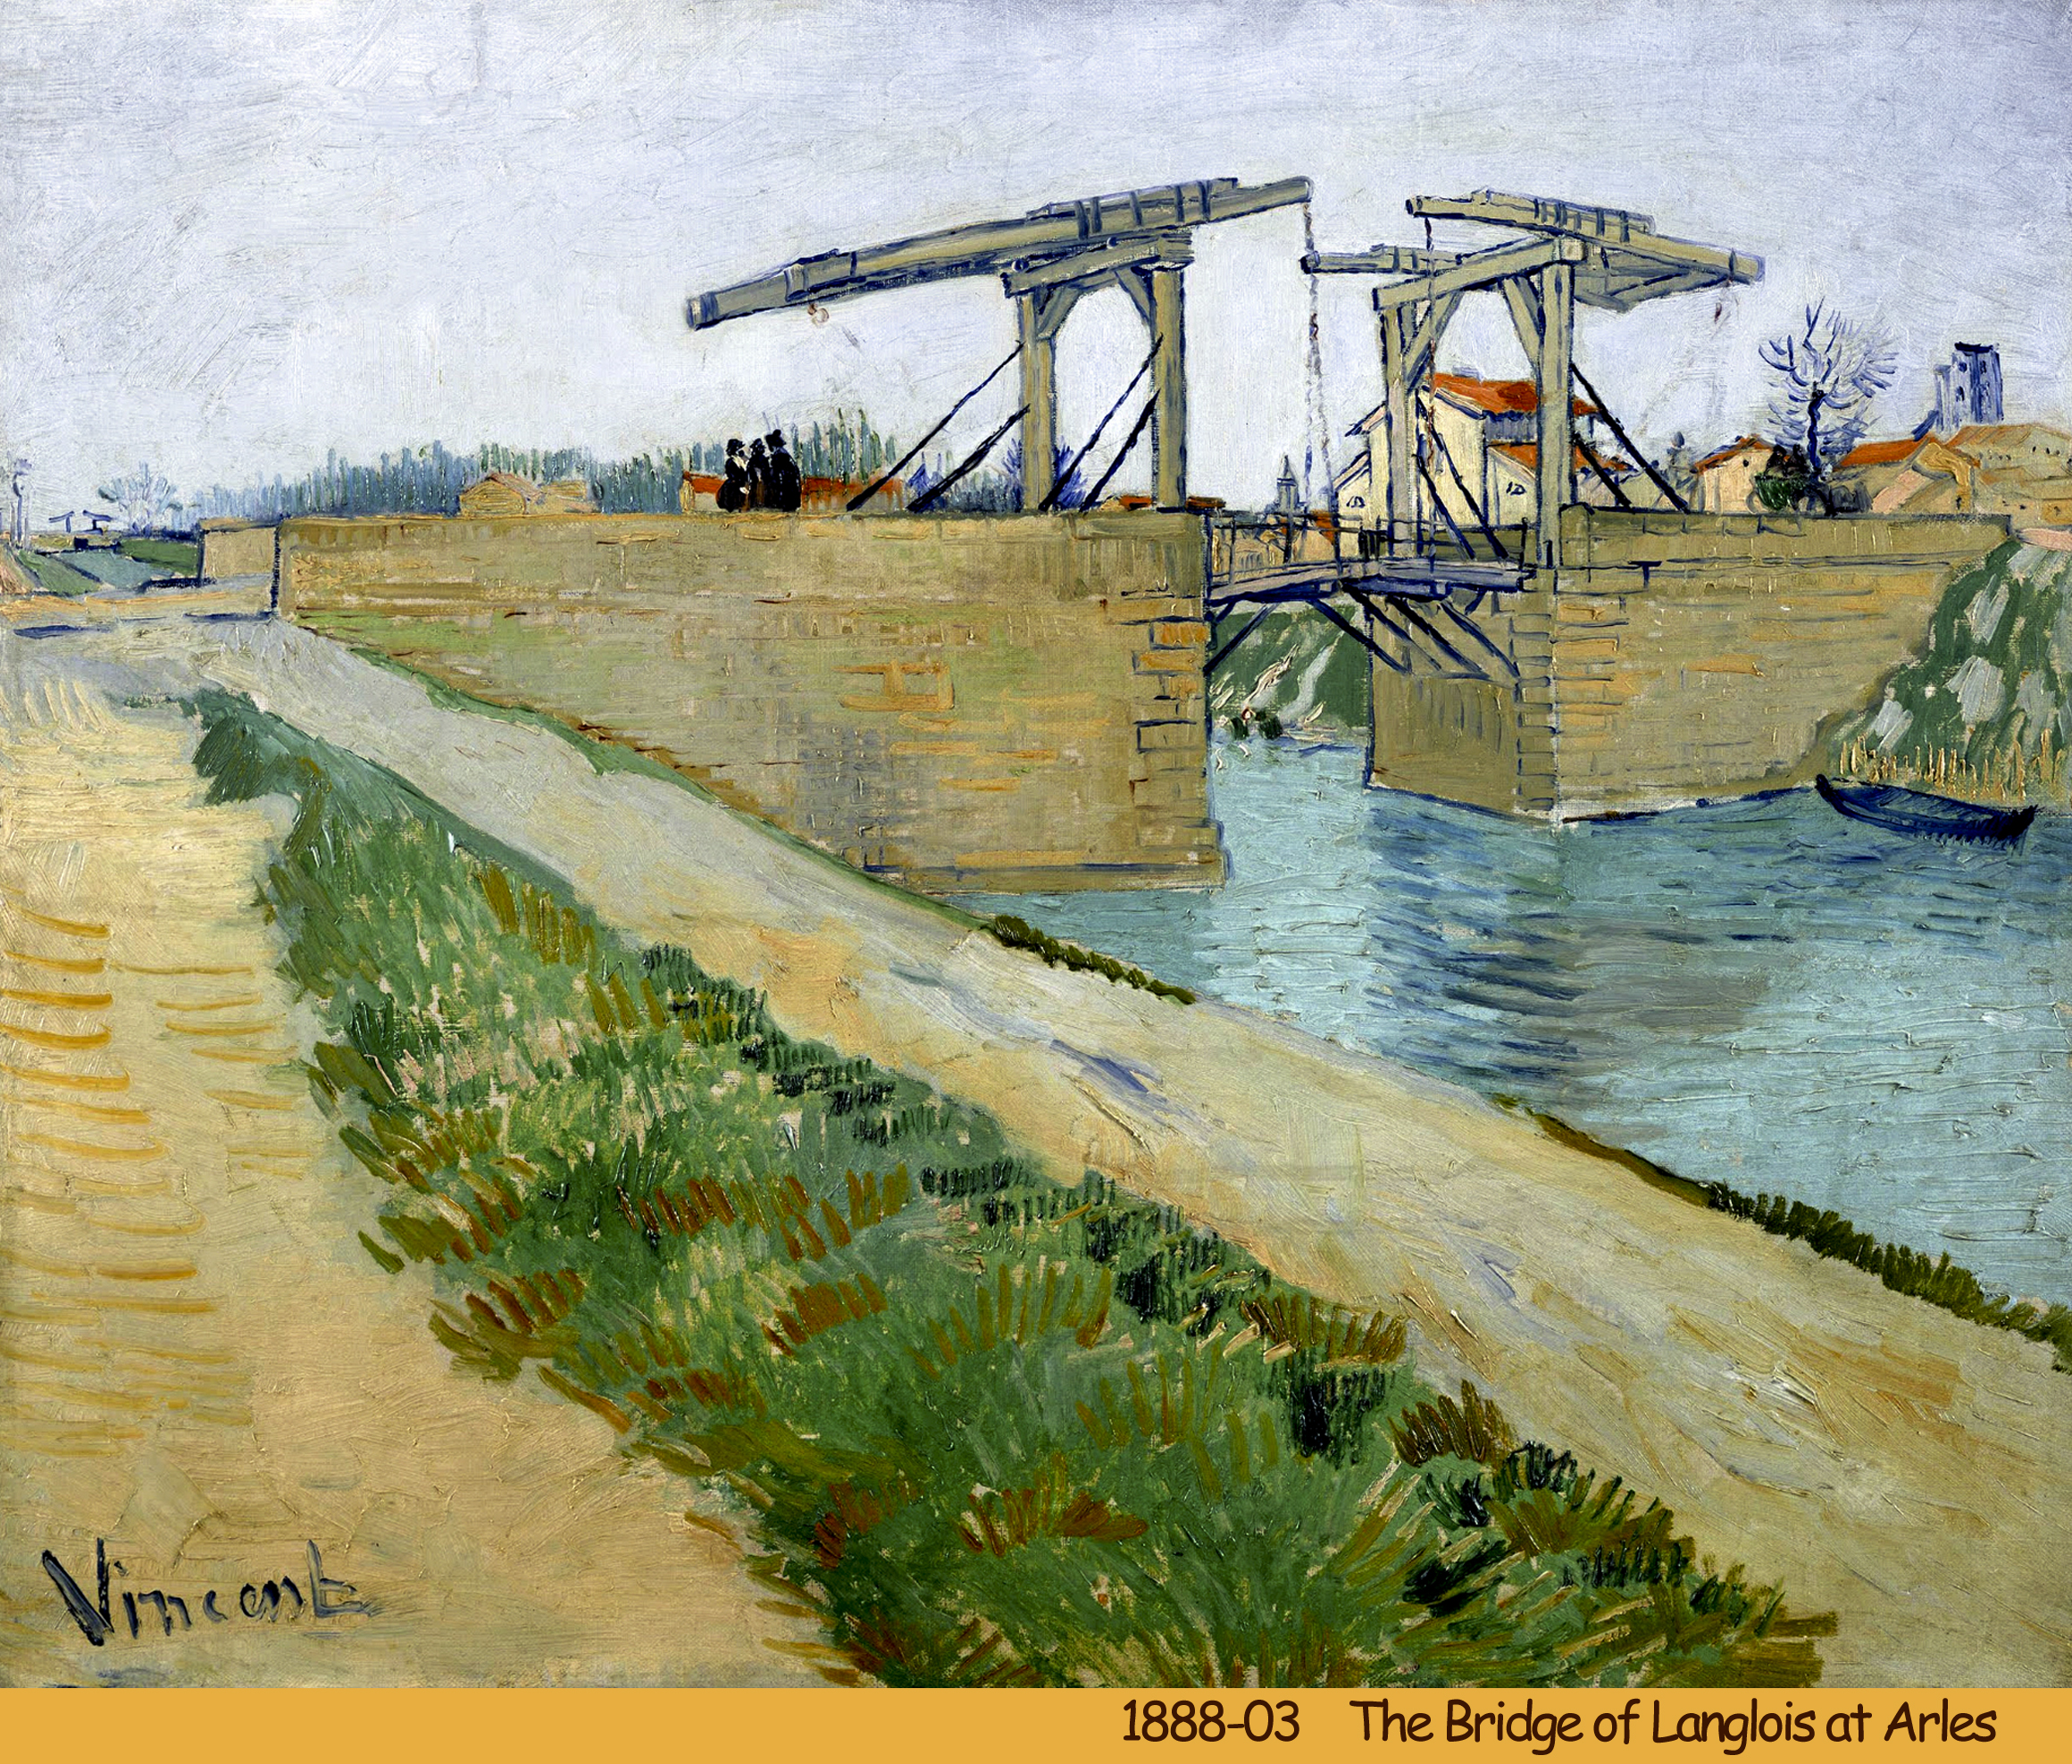 3. Arles 1888 -89 - 1888-03 02g - The Bridge of Langlois at Arles.jpg